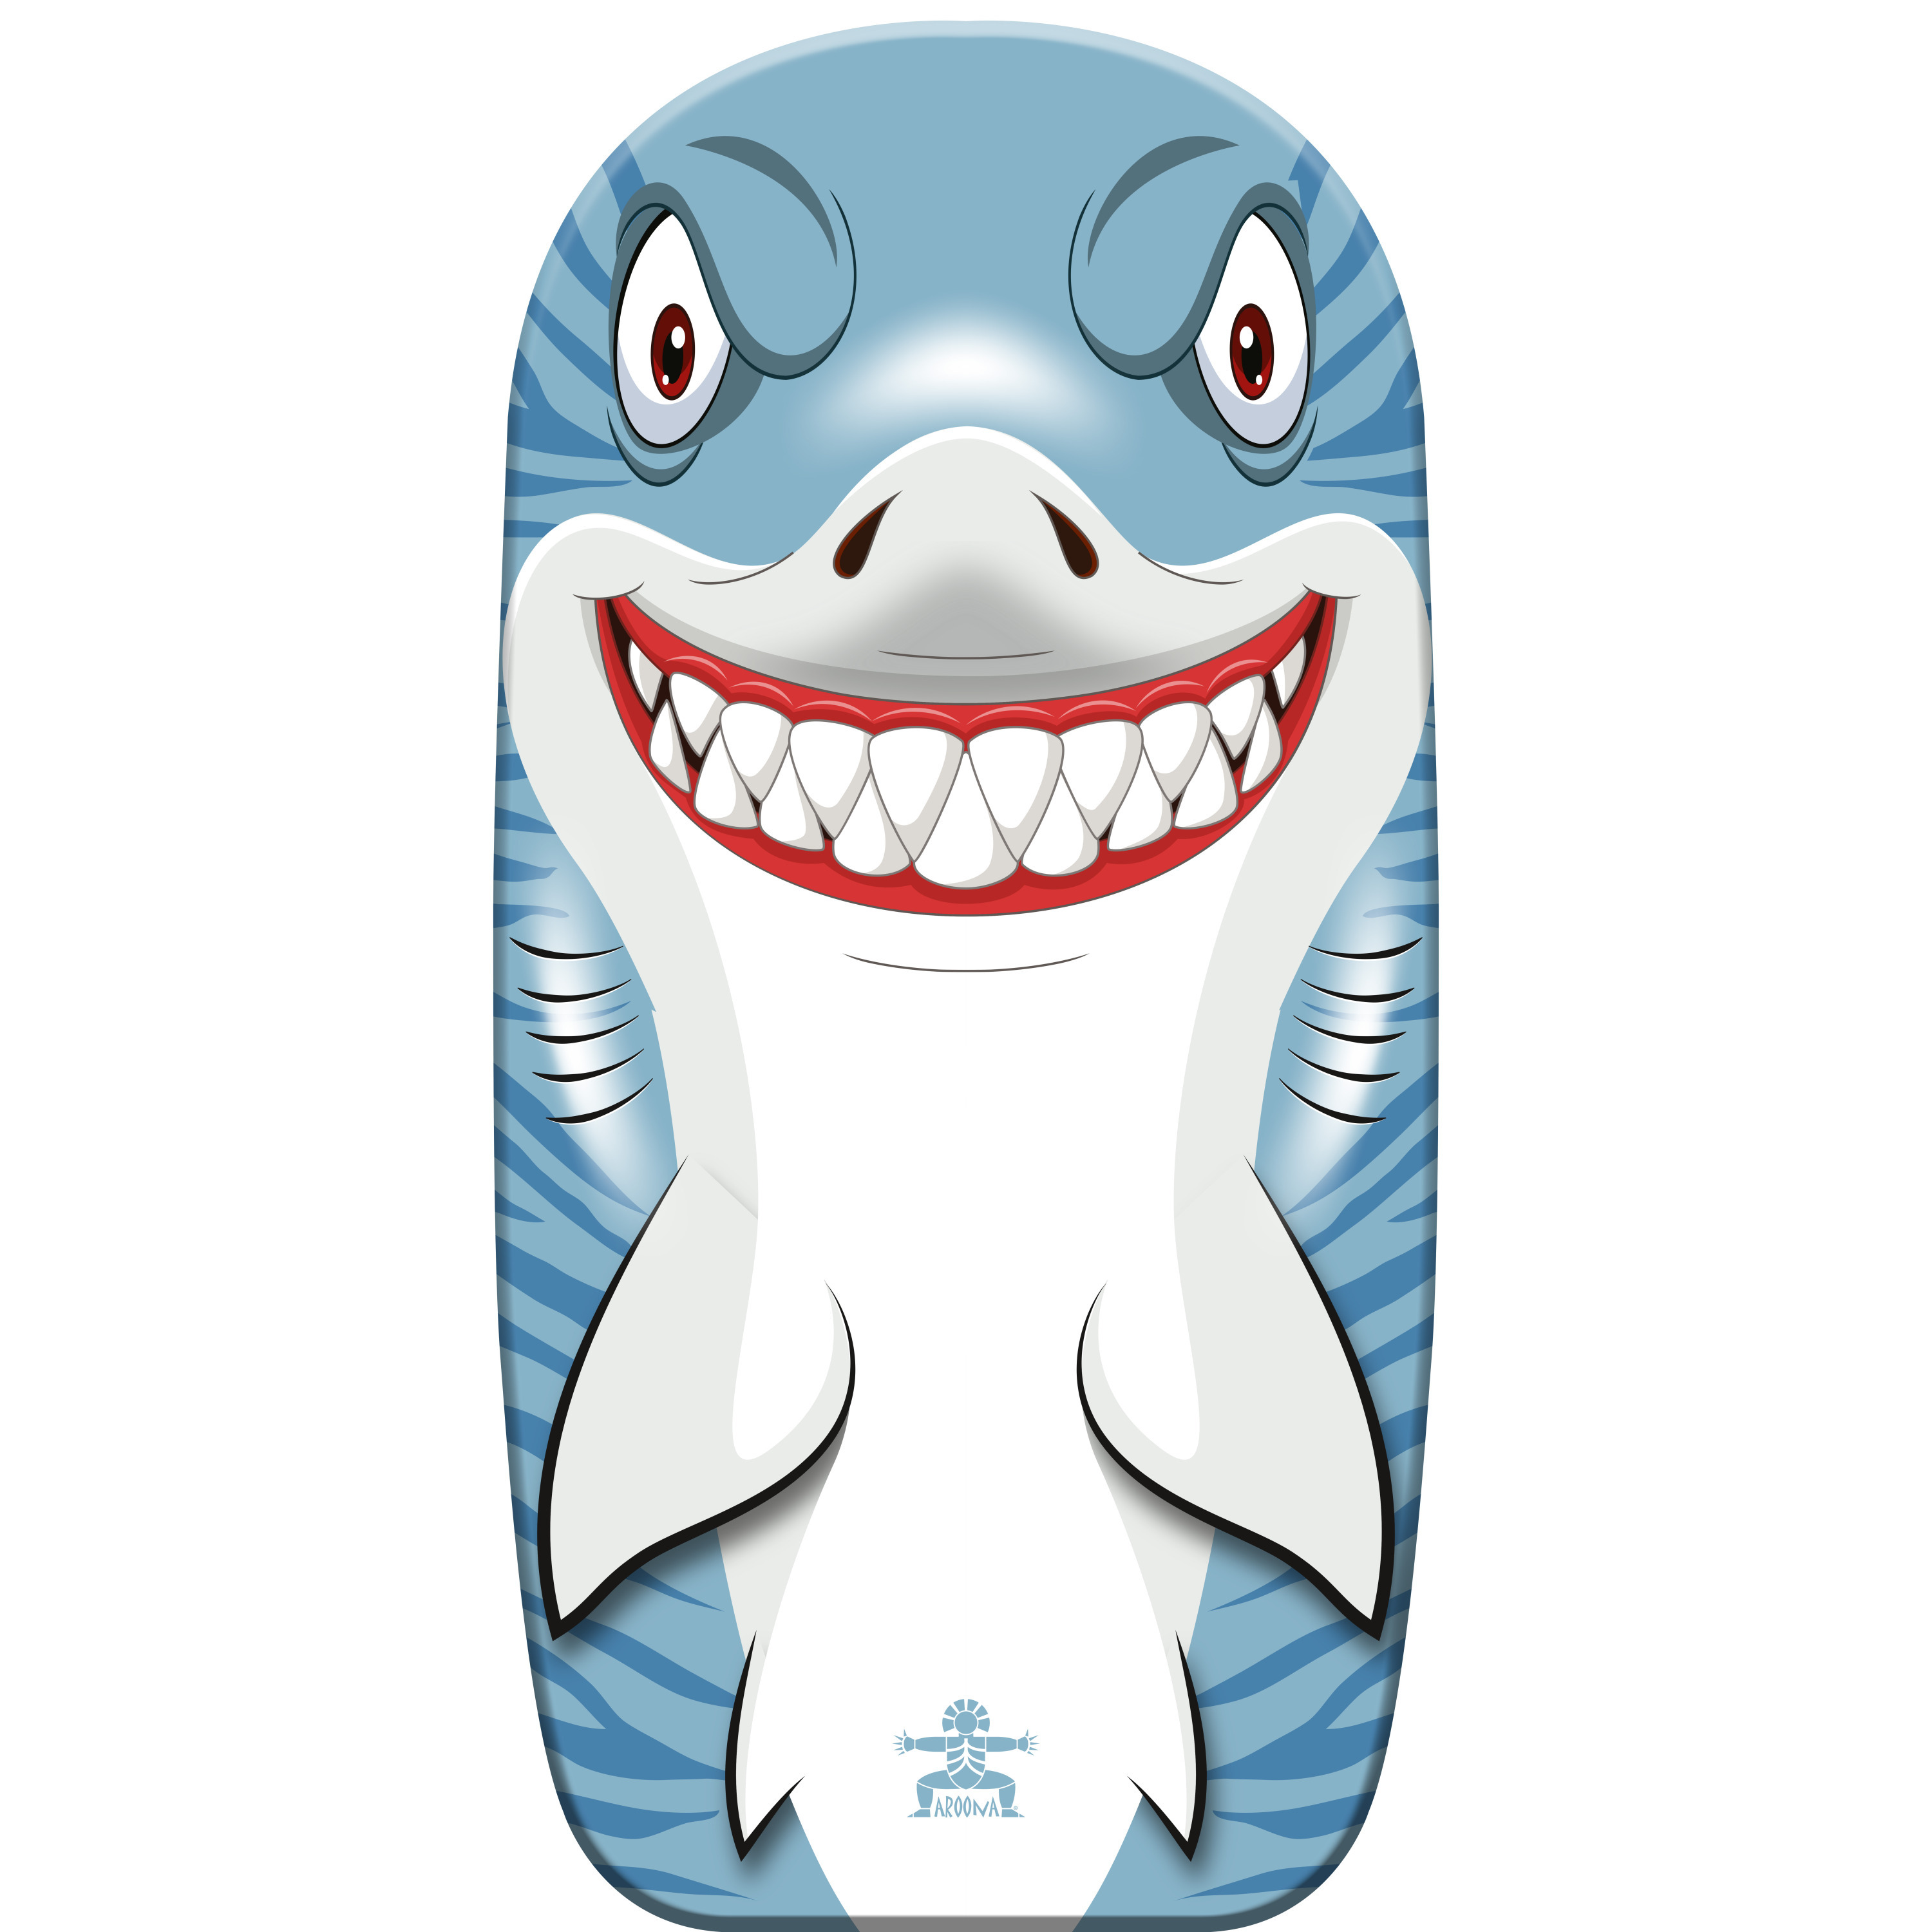 Bodyboard haai kunststof lichtblauw-wit 82 x 46 cm